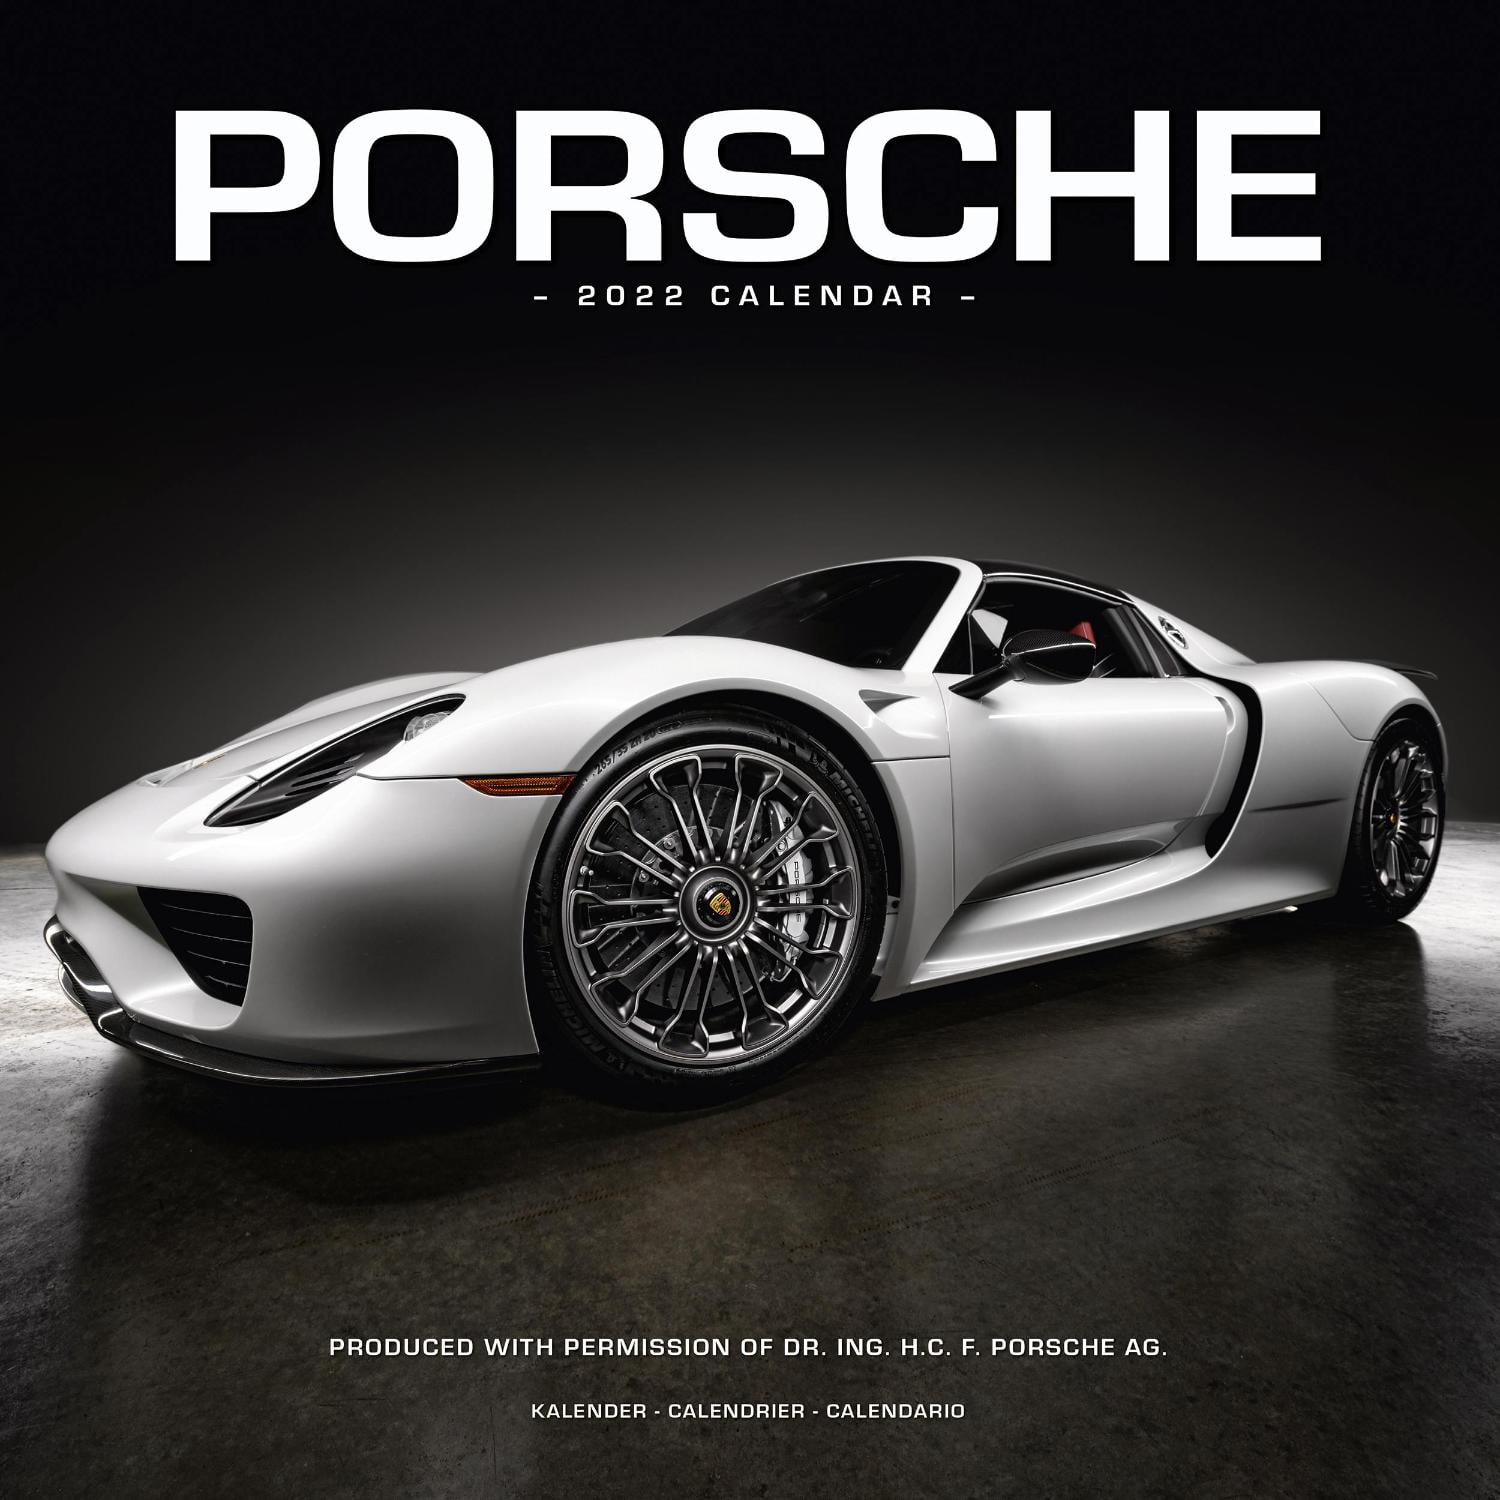 Porsche 2022 Calendar A Stunning Collection of Beautiful Sports Cars